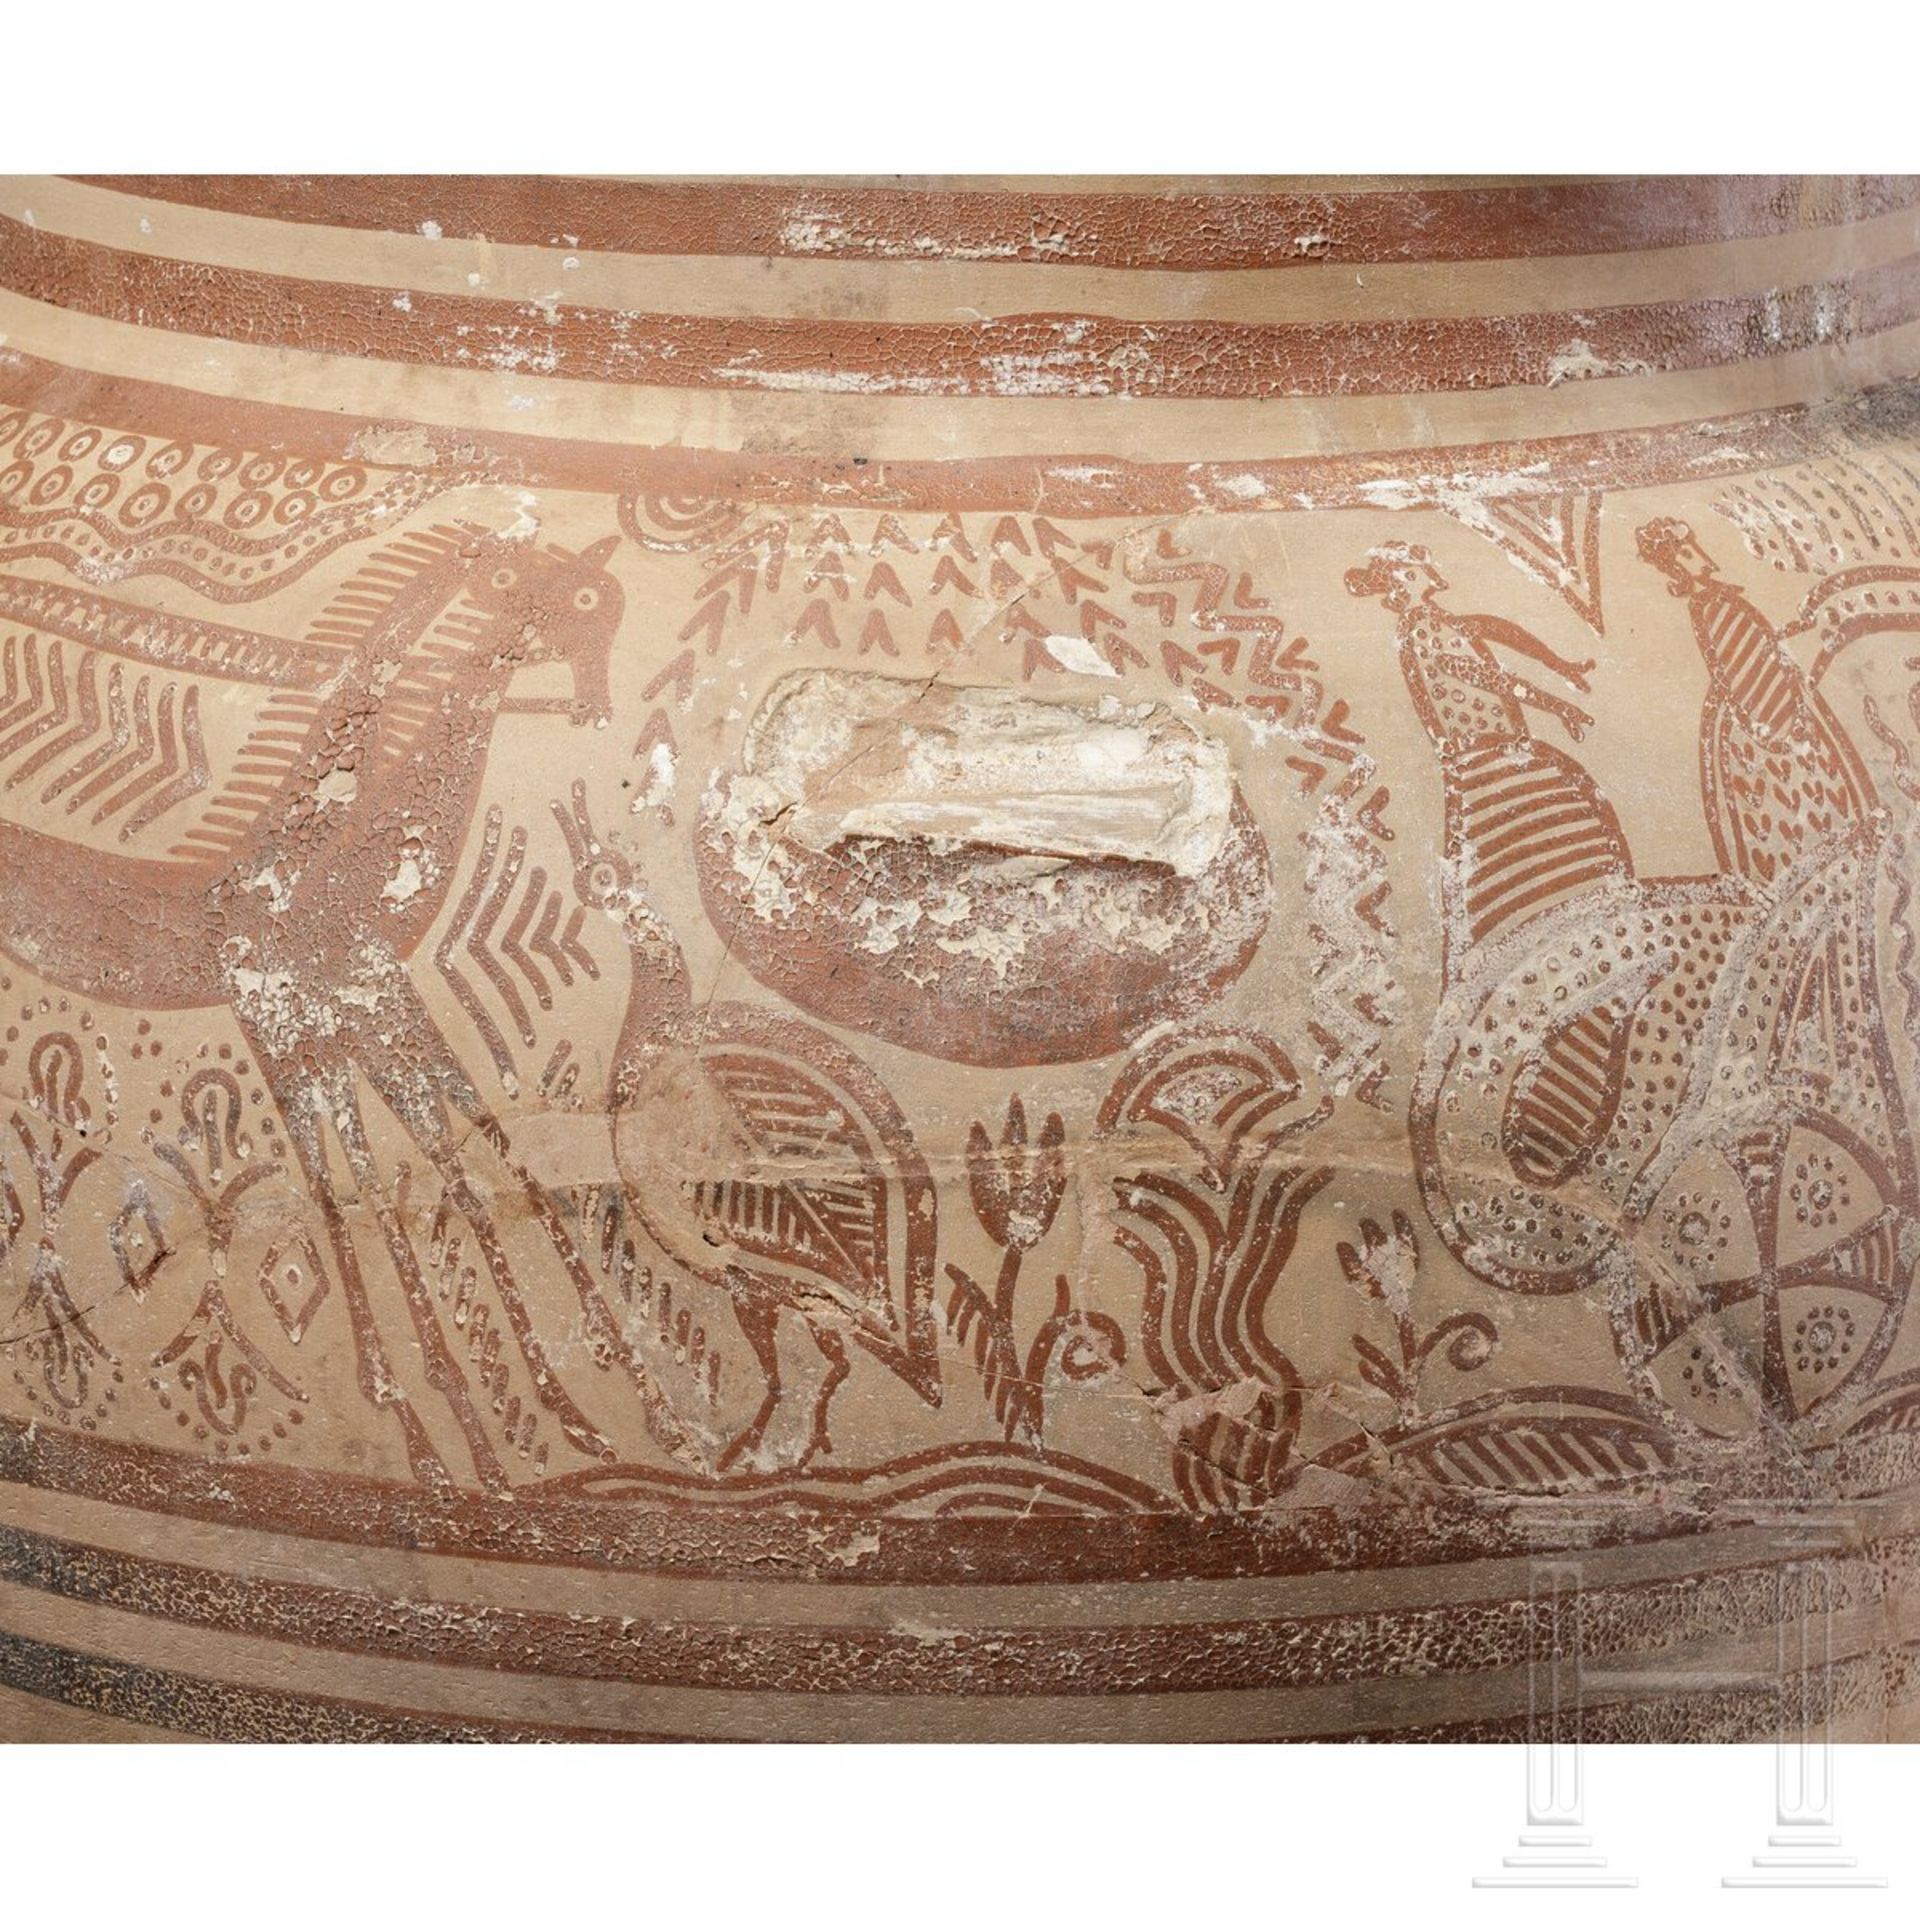 Krater mit Darstellung eines Wagenumzugs, Griechenland, mykenische Epoche, 14. Jhdt. v. Chr. - Bild 6 aus 12